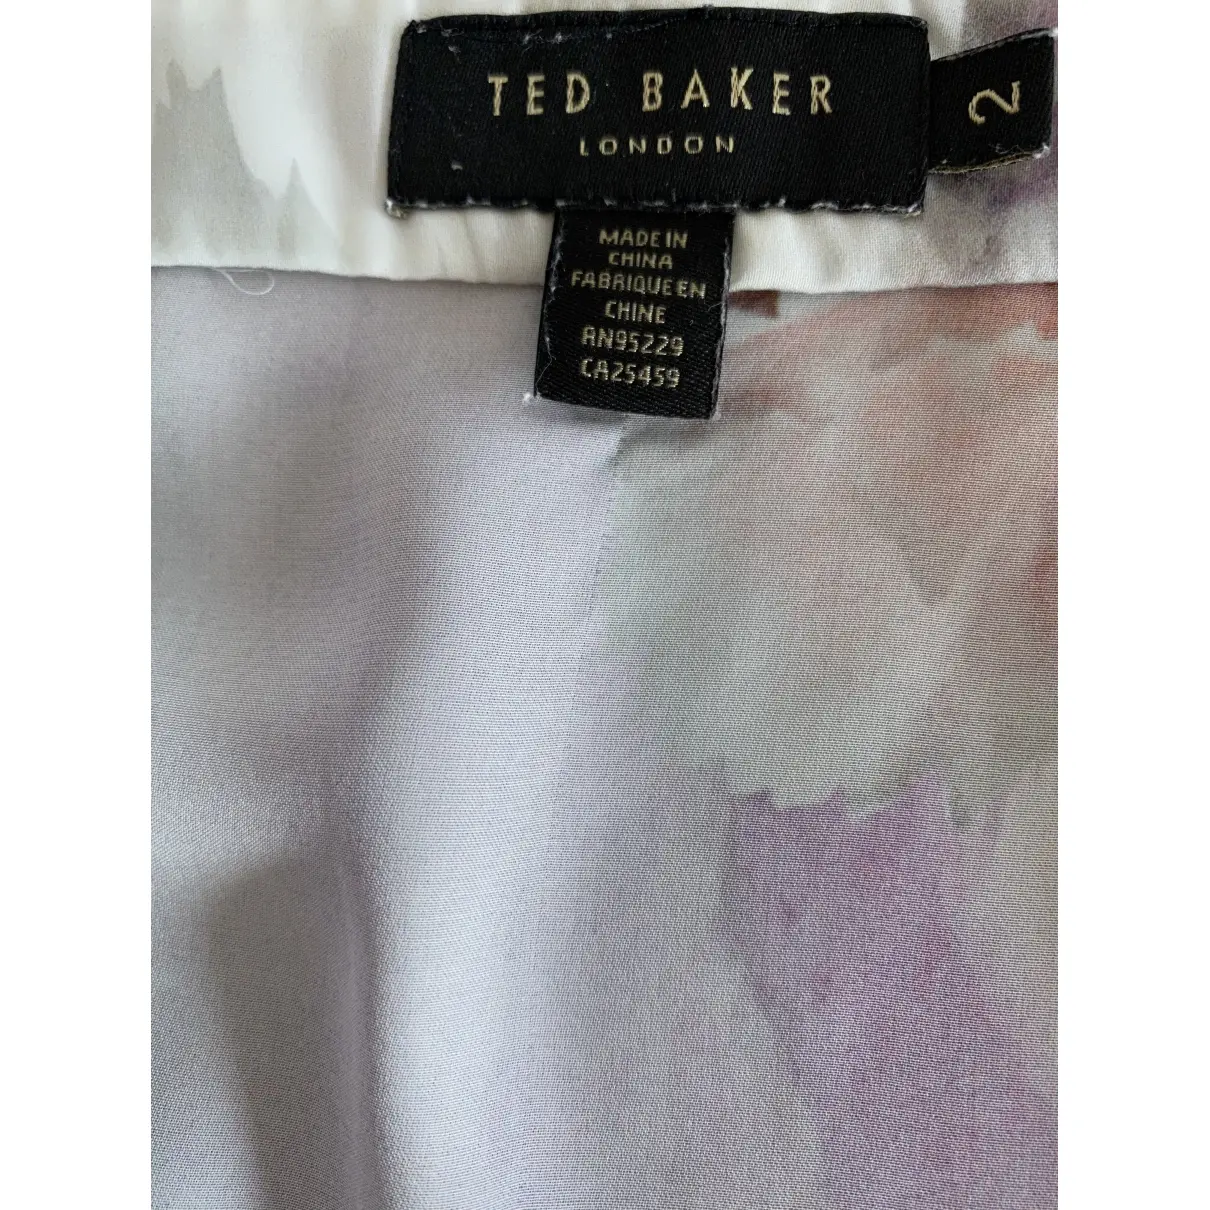 Buy Ted Baker Blouse online